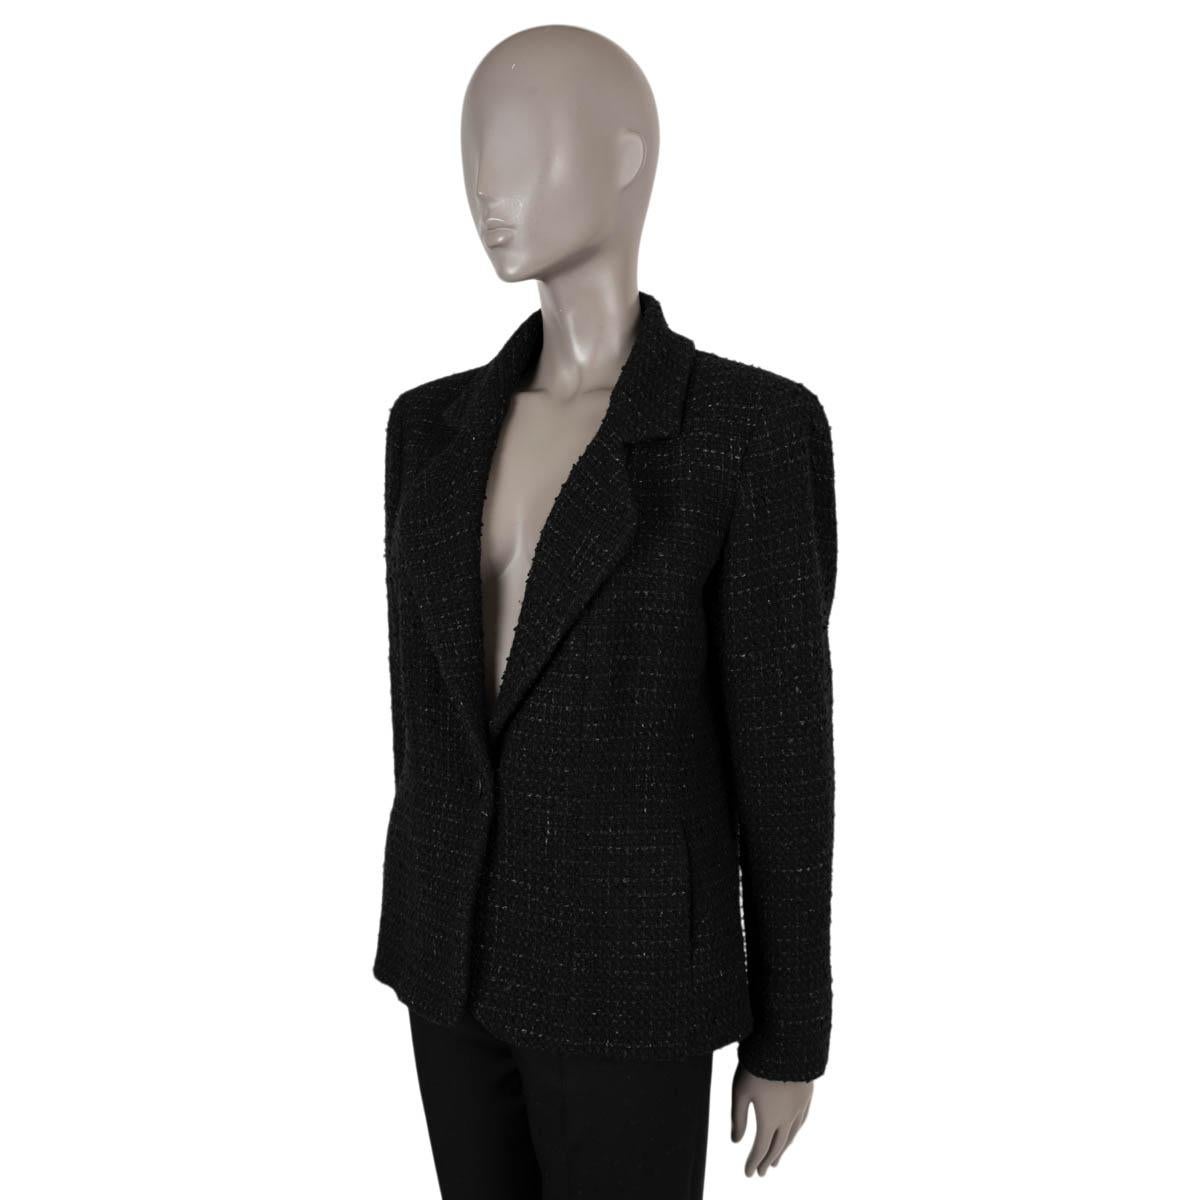 100% authentische klassische Chanel Tweed-Jacke mit einem Knopf aus schwarzer Melange aus Wolle (86%), Polyamid (10%) und Polyester (4%). Das Design zeichnet sich durch einen CC-Knopf auf der Vorderseite, zwei Knöpfe an jeder Manschette und zwei